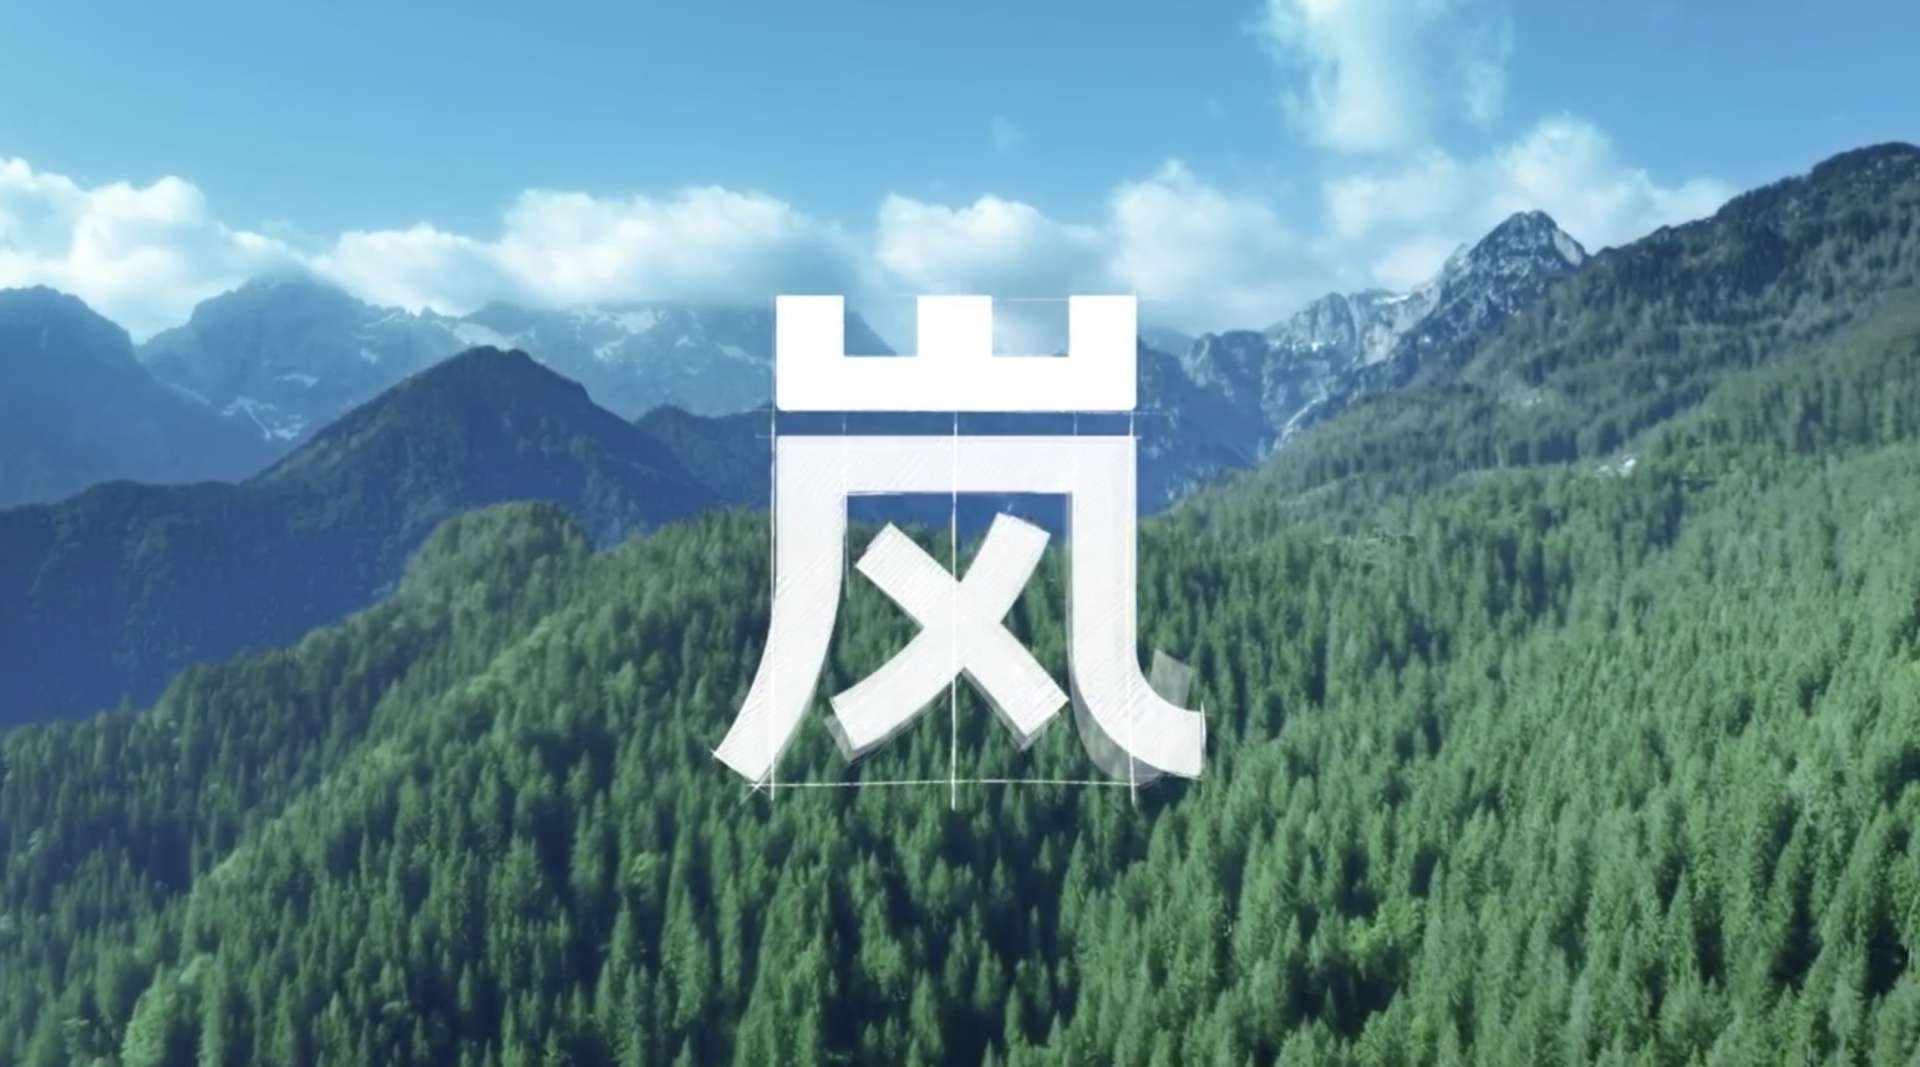 东风 岚图 logo篇